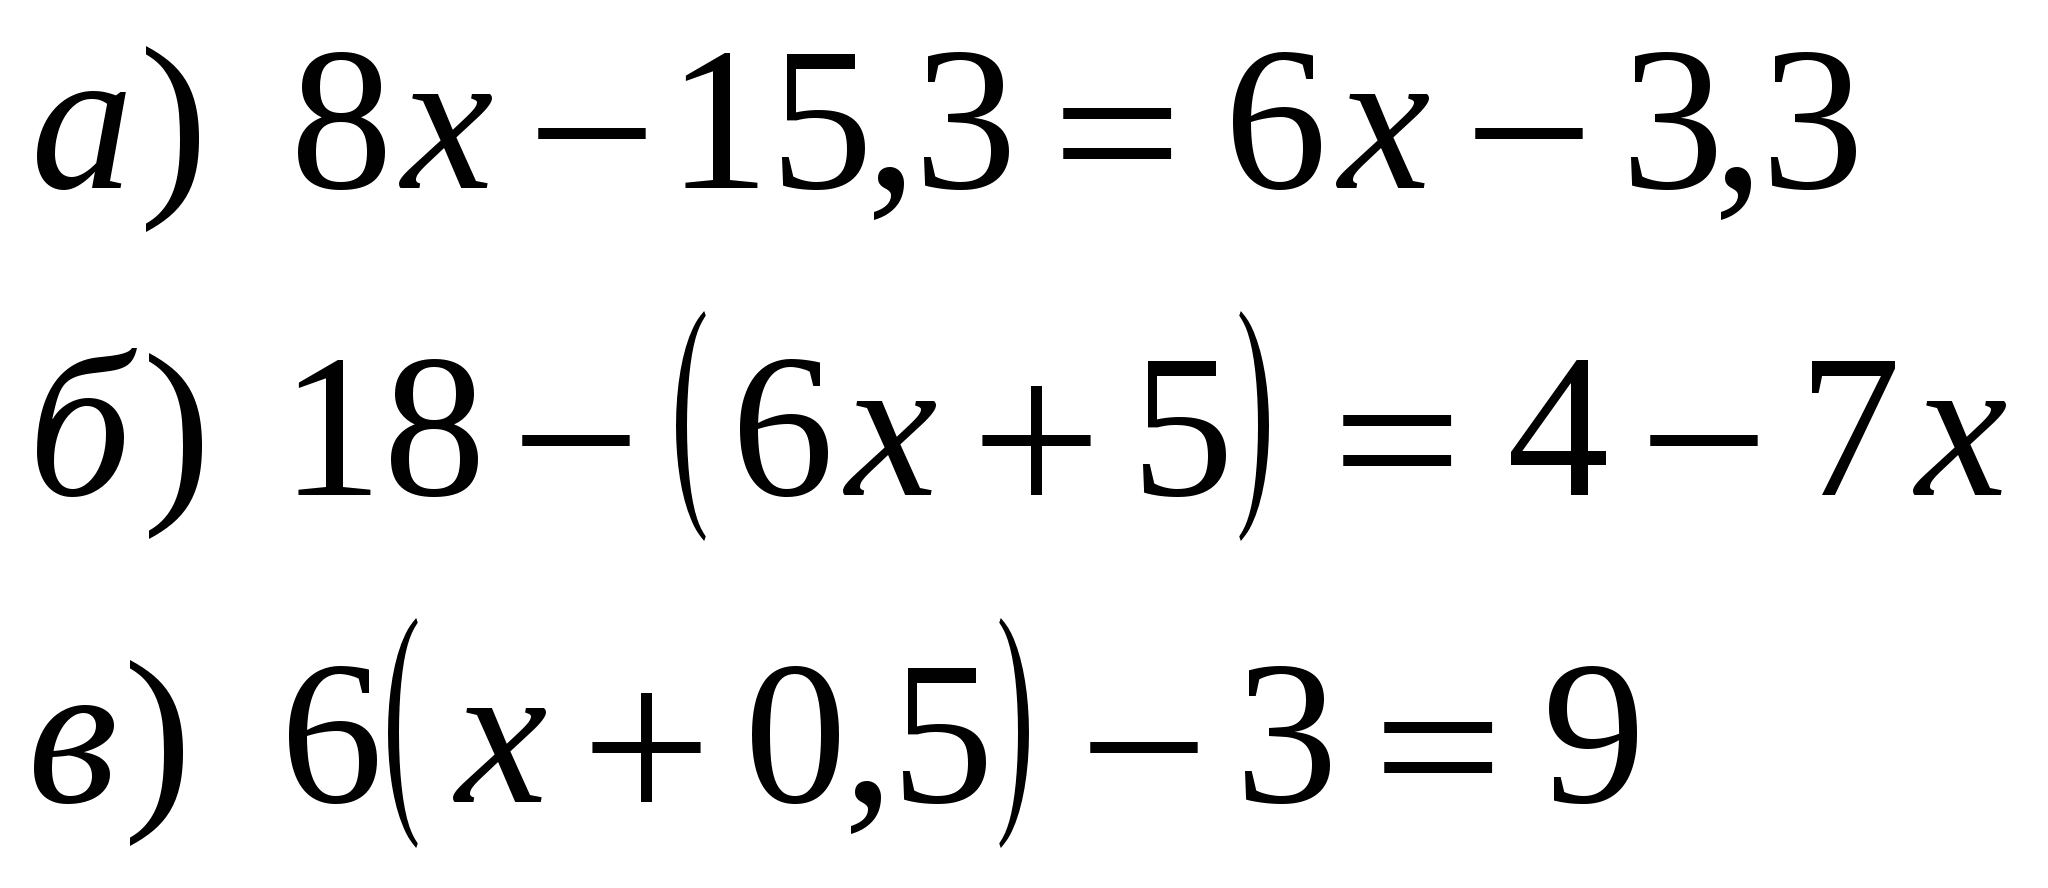 Задания для подготовки к контрольной работе по алгебре 7 класса «Уравнение с одной переменной»